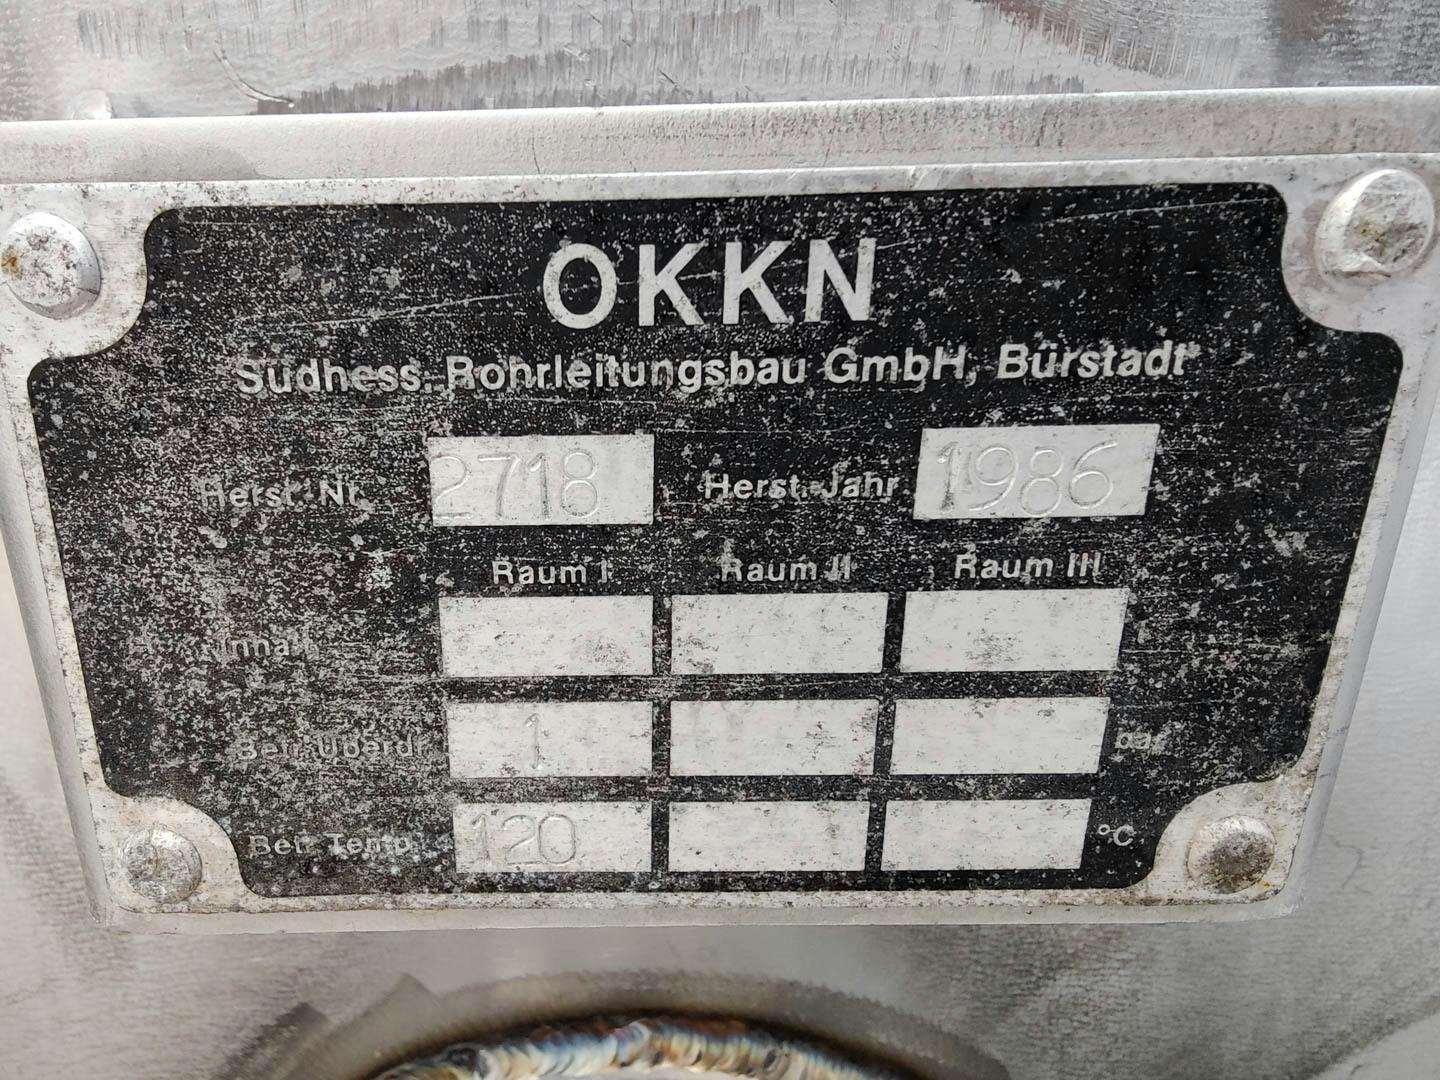 Okkn Buerstadt - Distillation - image 11